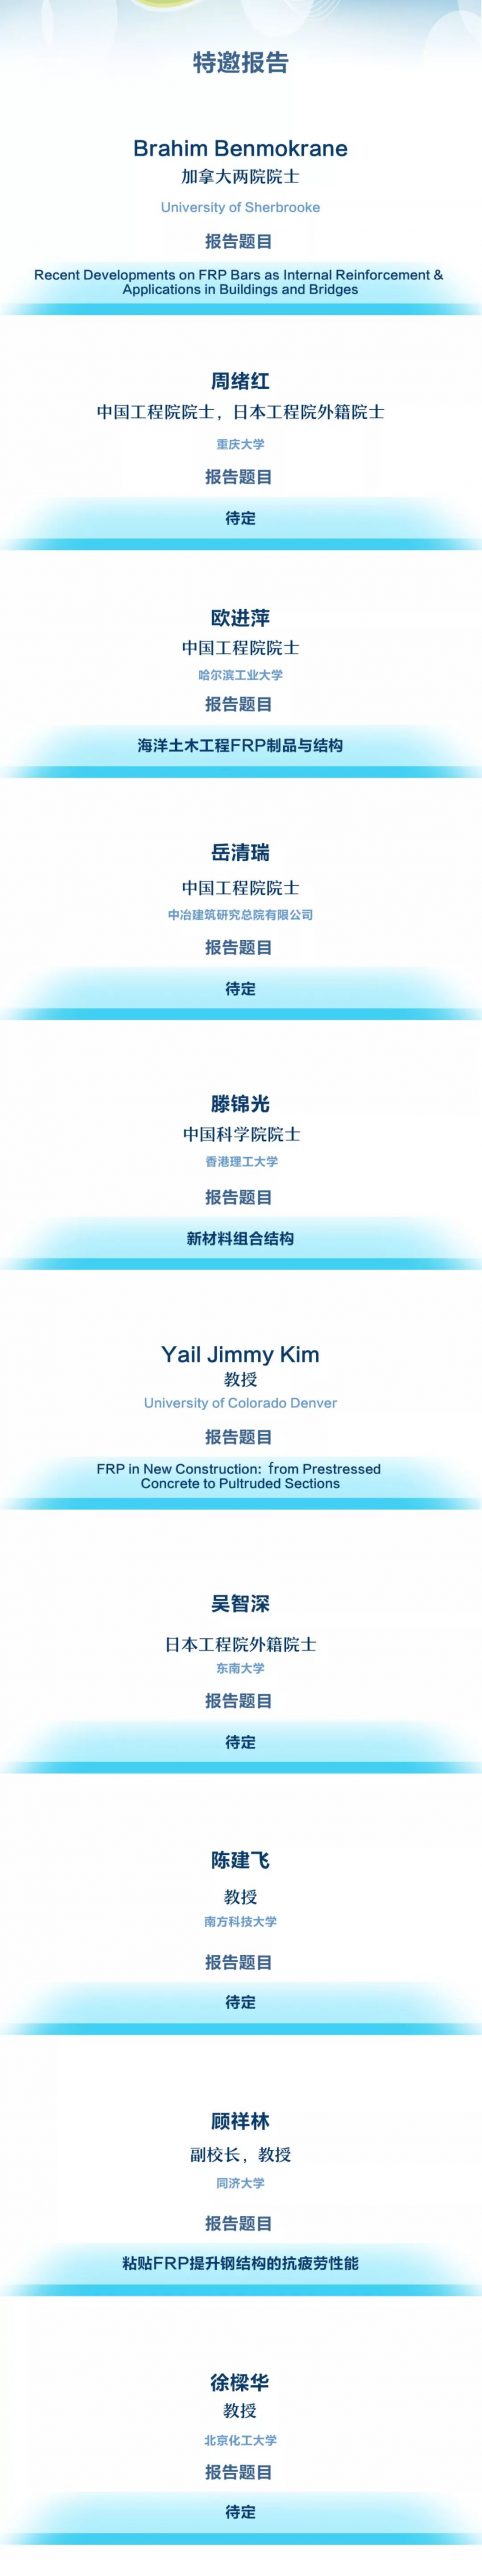 2019中国土木工程纤维增强复合材料高峰论坛暨第十一届全国建设工程FRP应用技术交流会3号通知